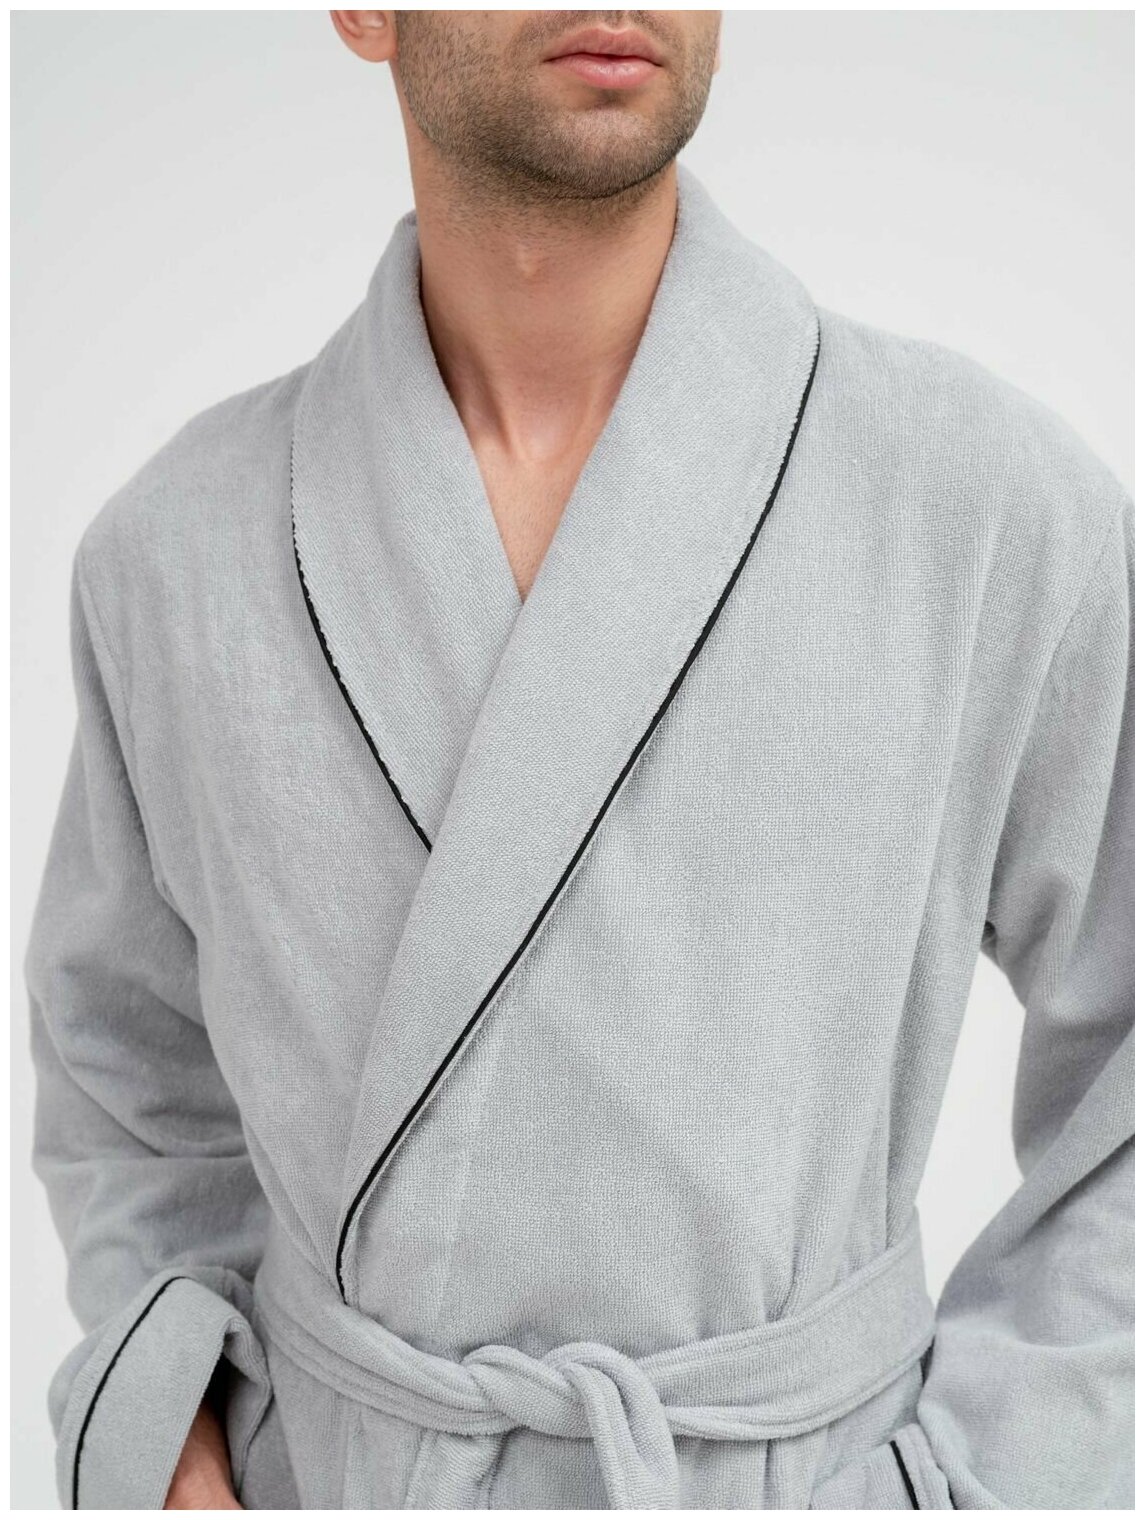 Мужской махровый халат с кантом, серебристый. Размер 46-48 - фотография № 2